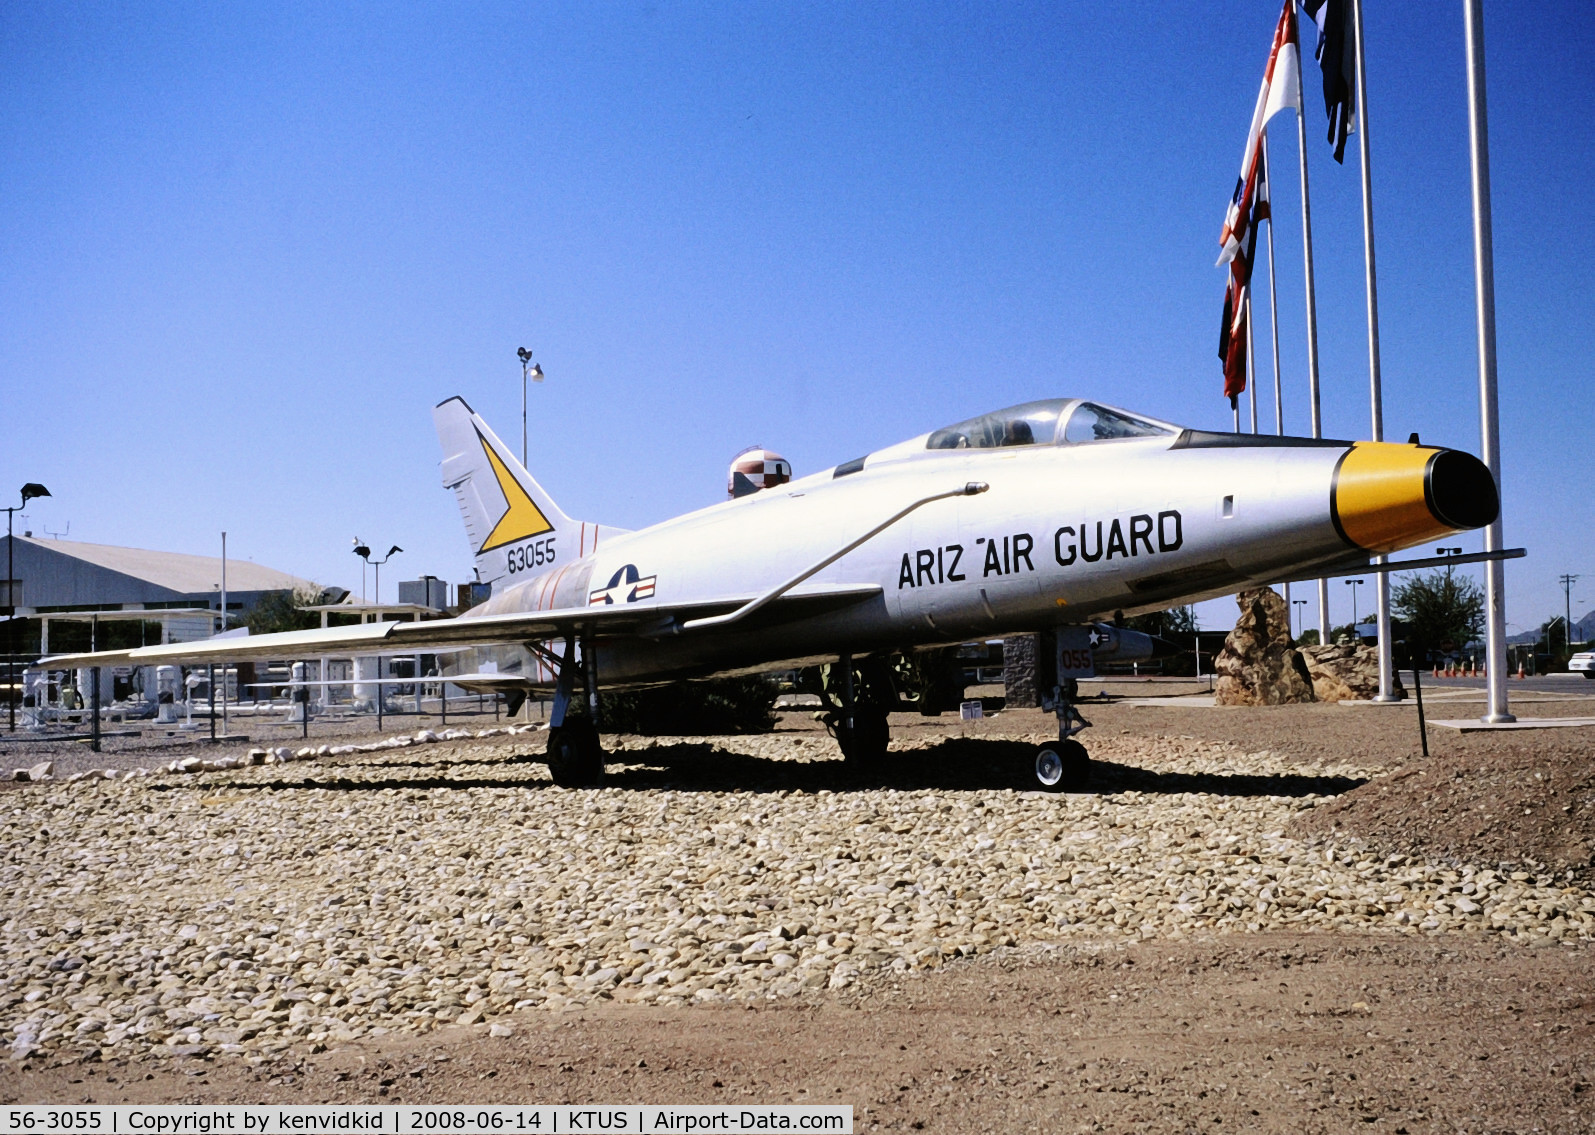 56-3055, 1956 North American F-100D Super Sabre C/N 235-153, At Tucson ANG base memorial park, circa 1993.